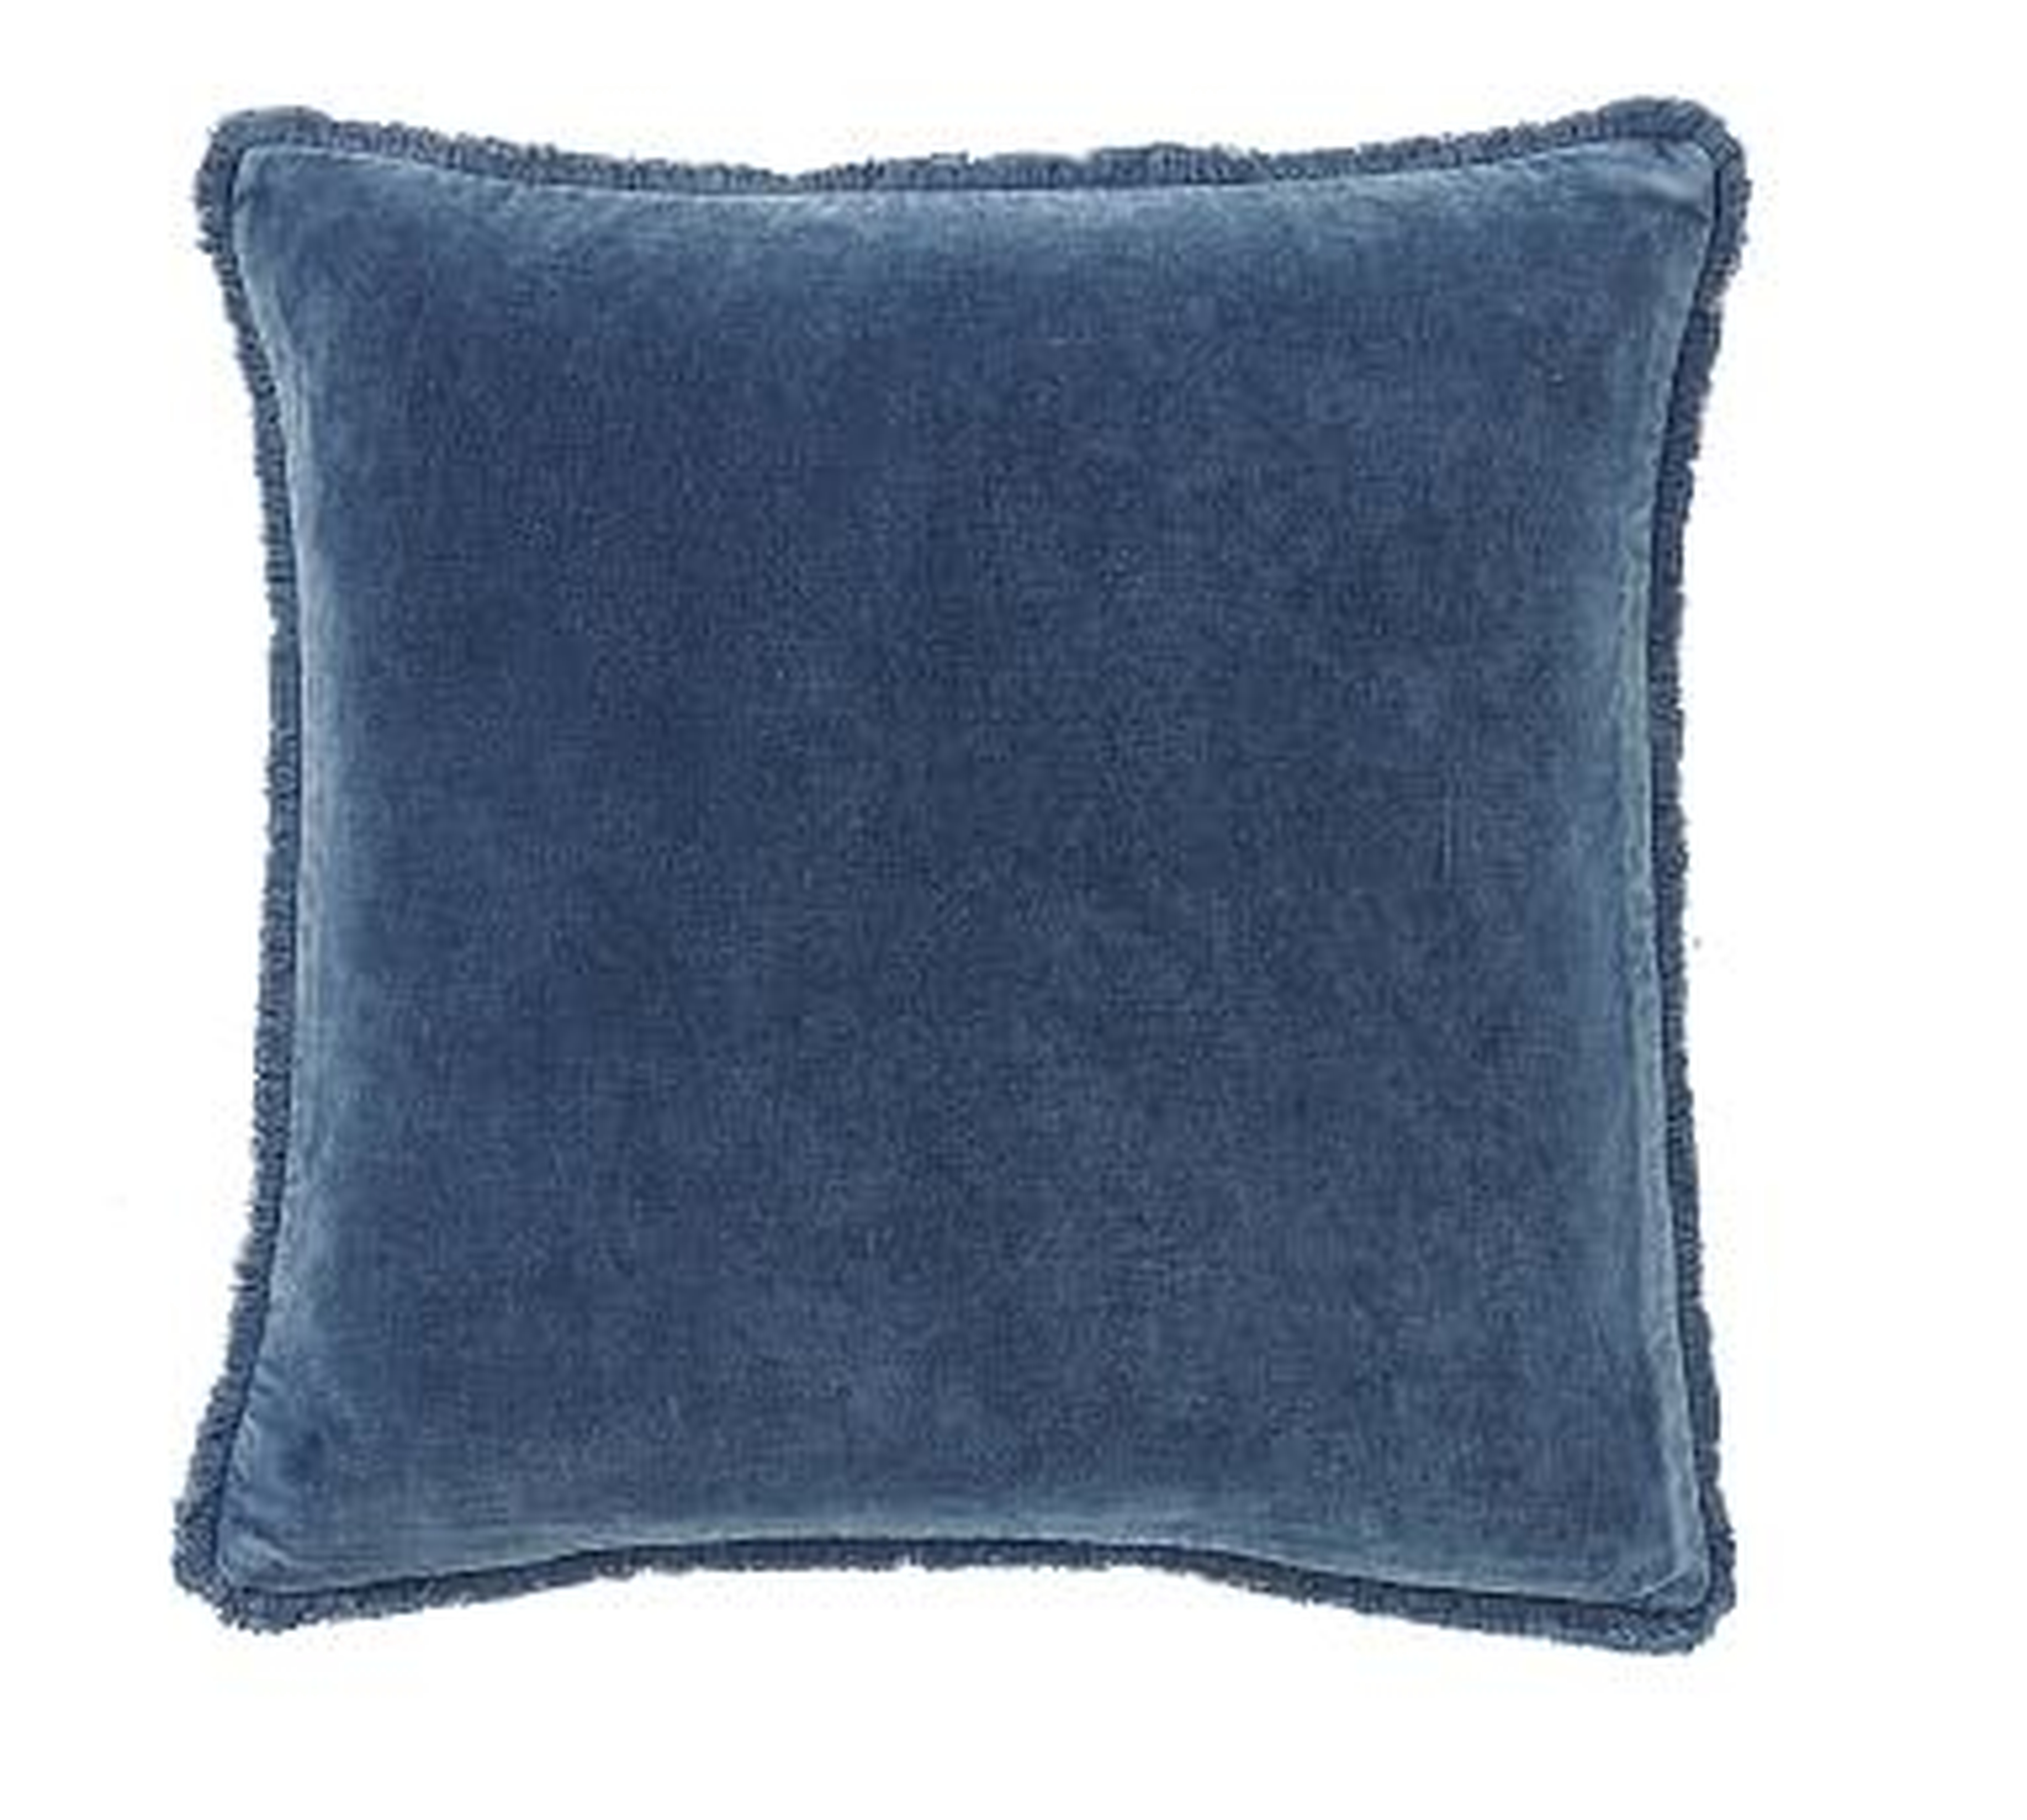 Fringe Velvet Pillow Cover, 22", Stormy Blue - Pottery Barn